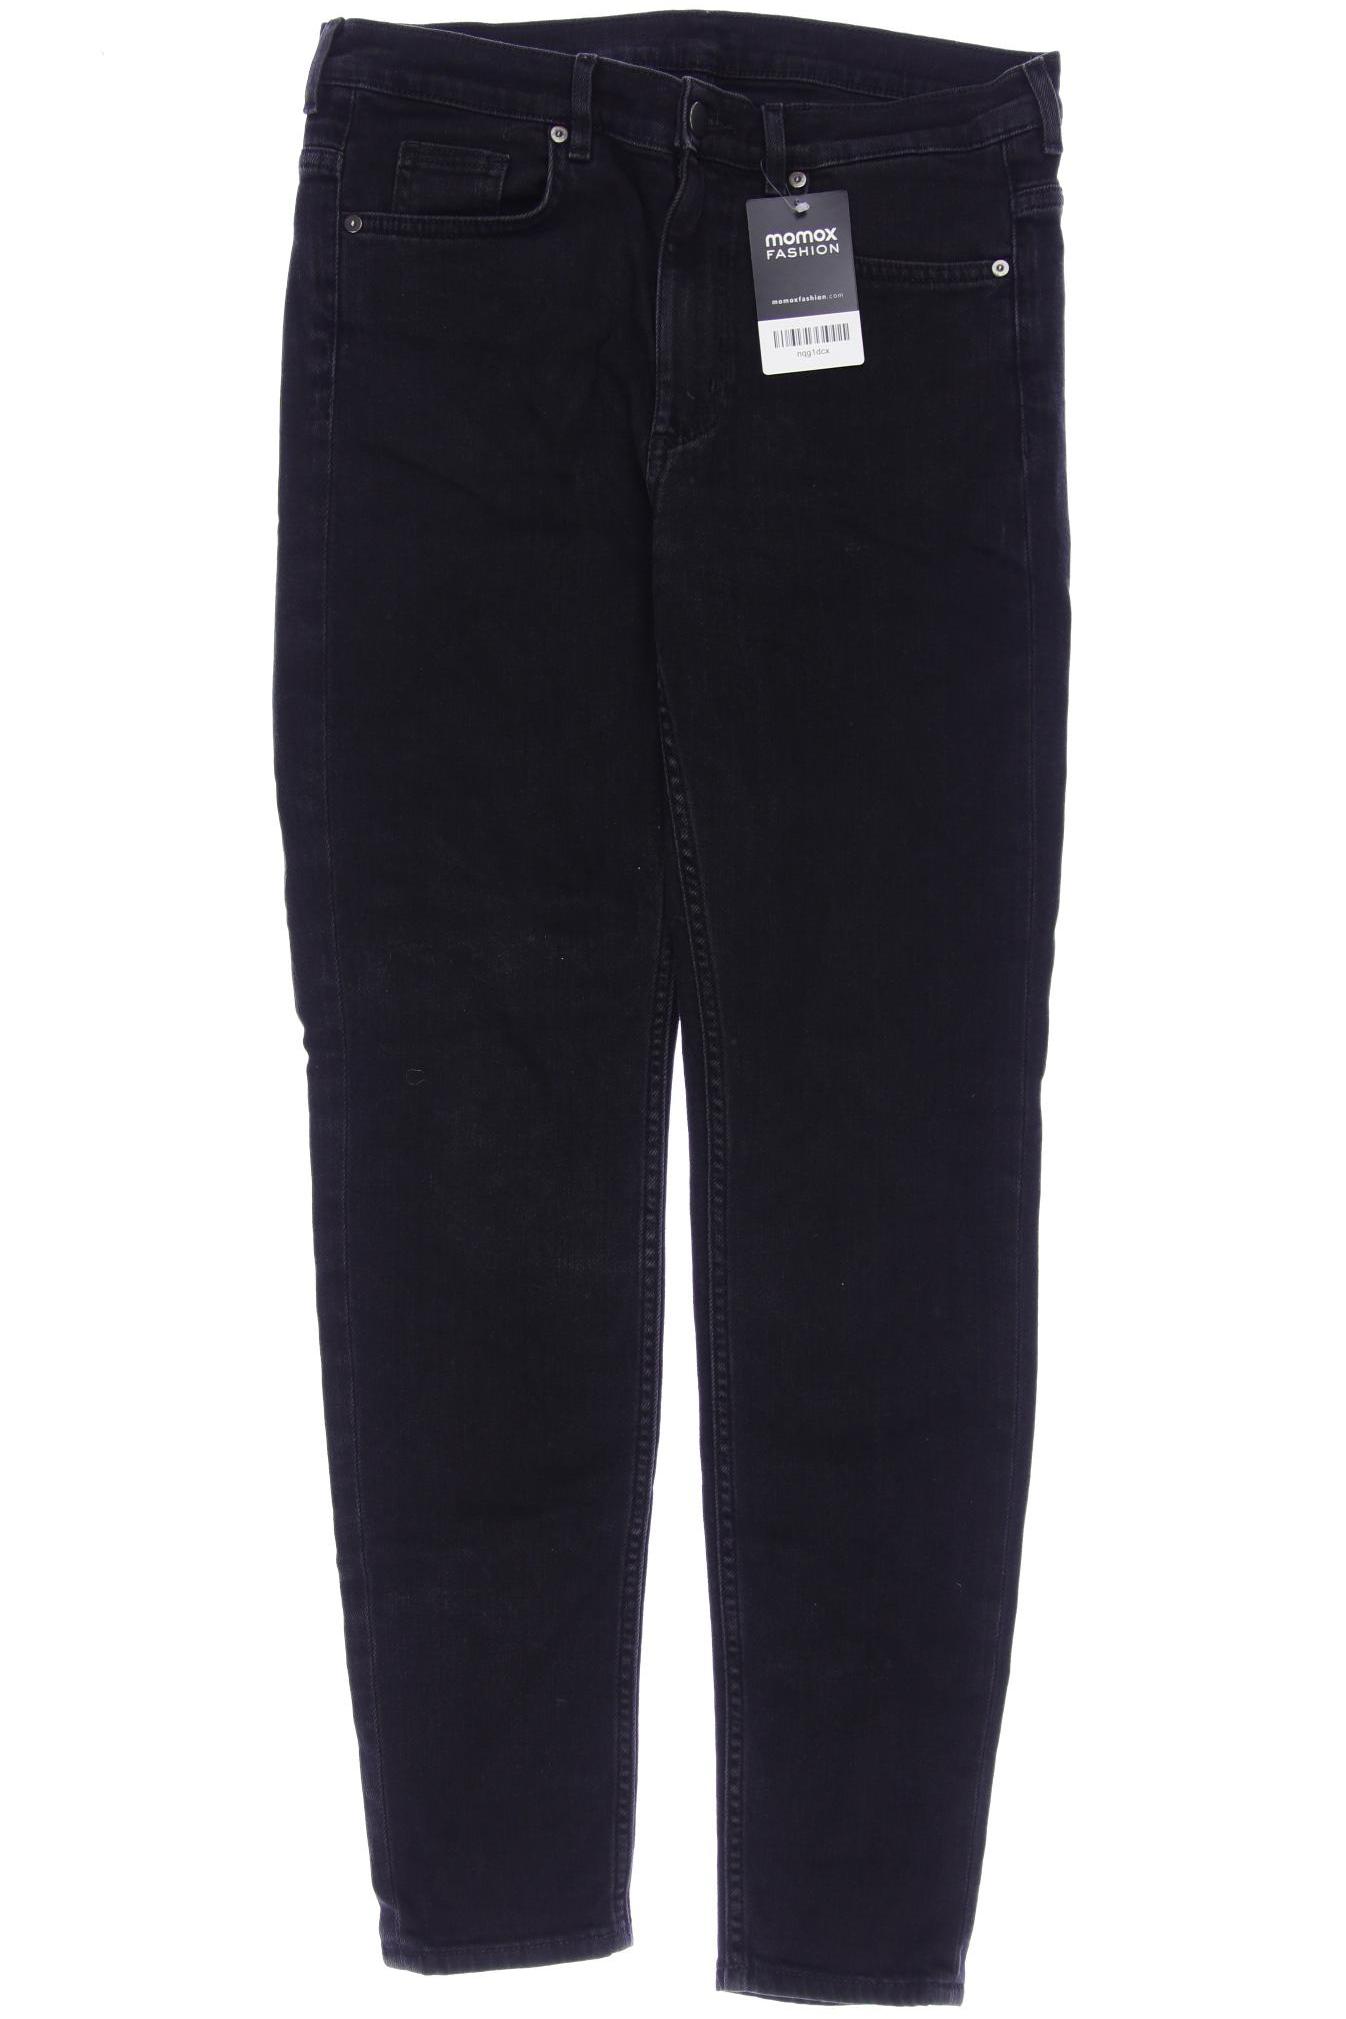 COS Damen Jeans, schwarz, Gr. 40 von COS